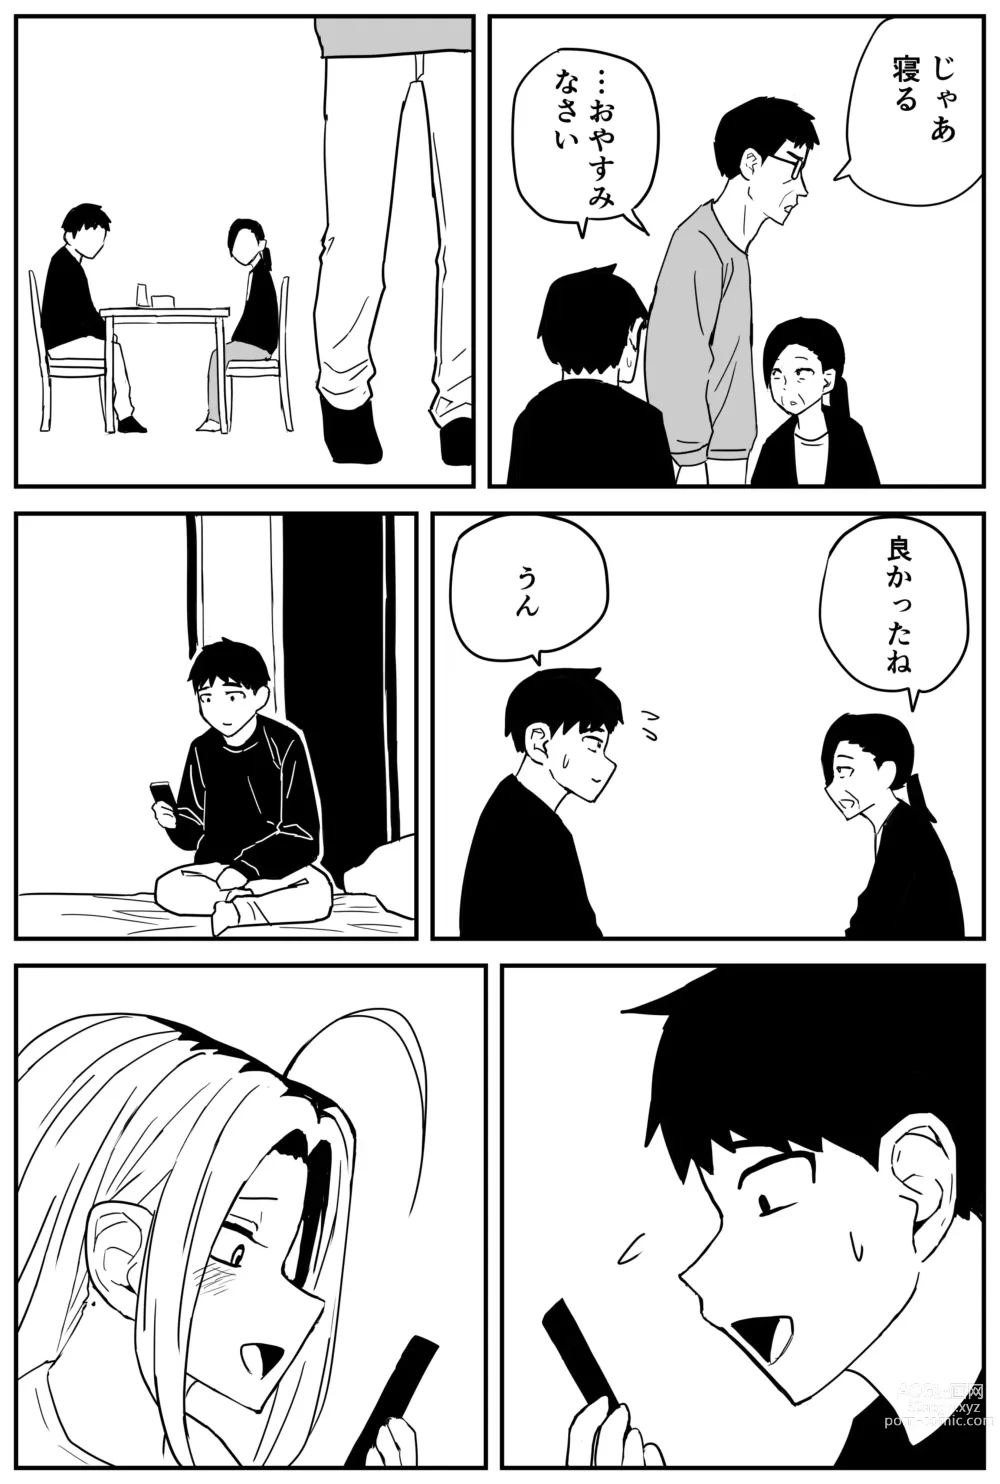 Page 342 of doujinshi Gal JK Ero Manga Ch.1-27